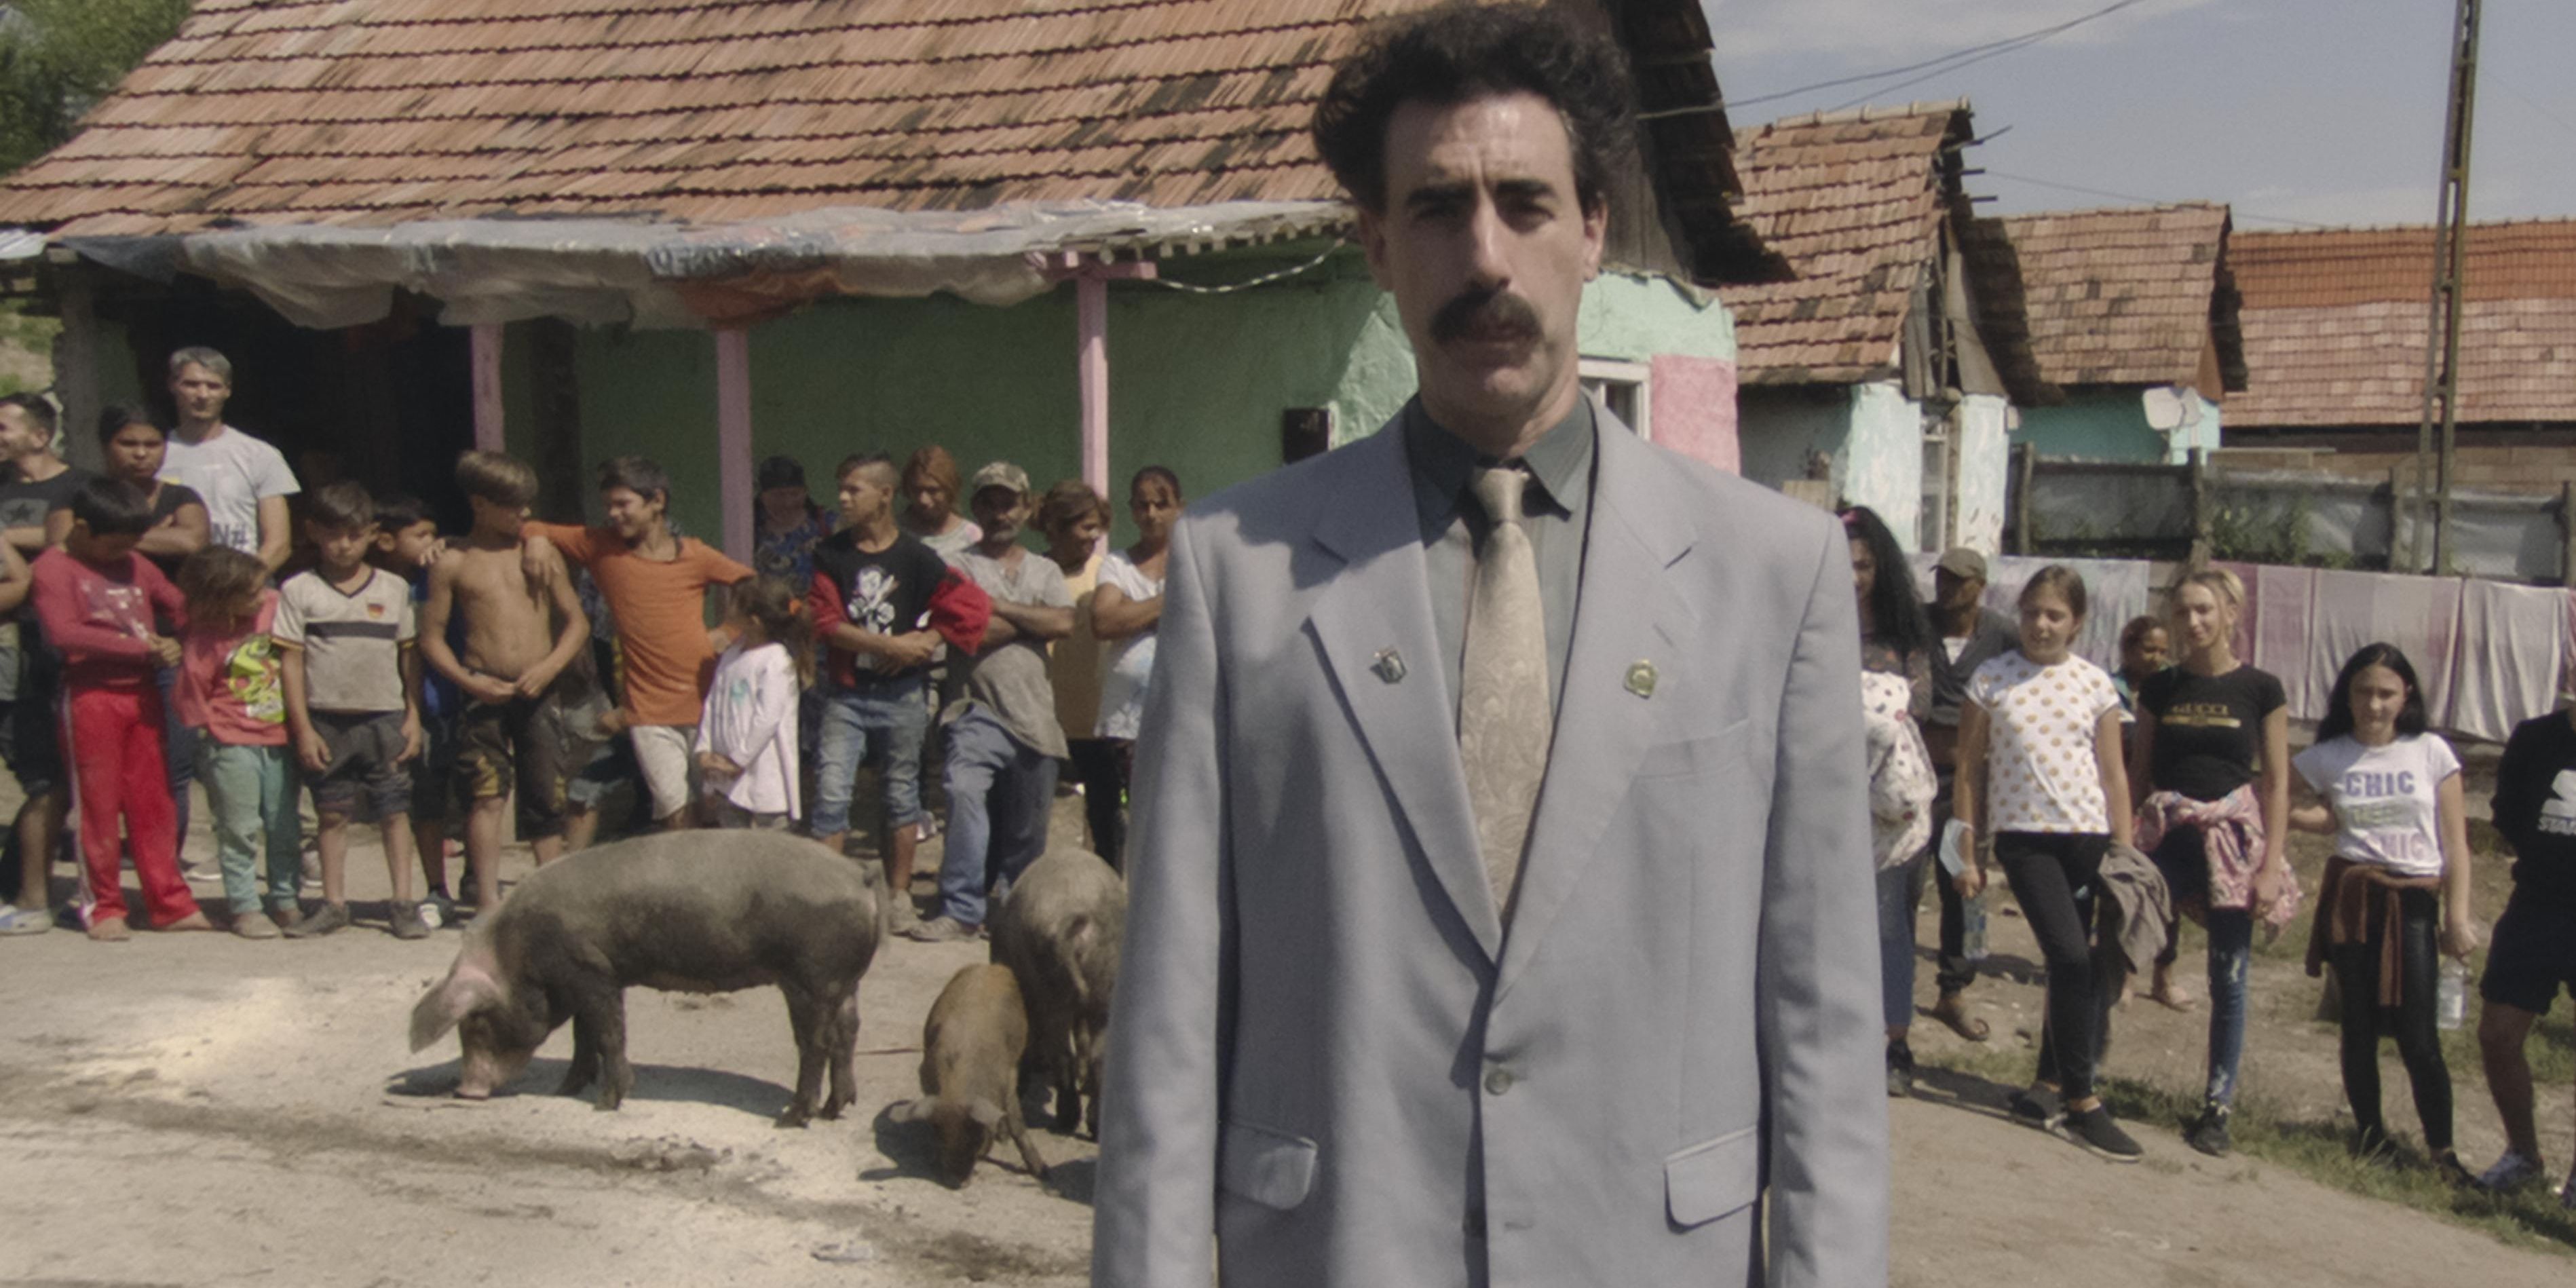 Borat in the village